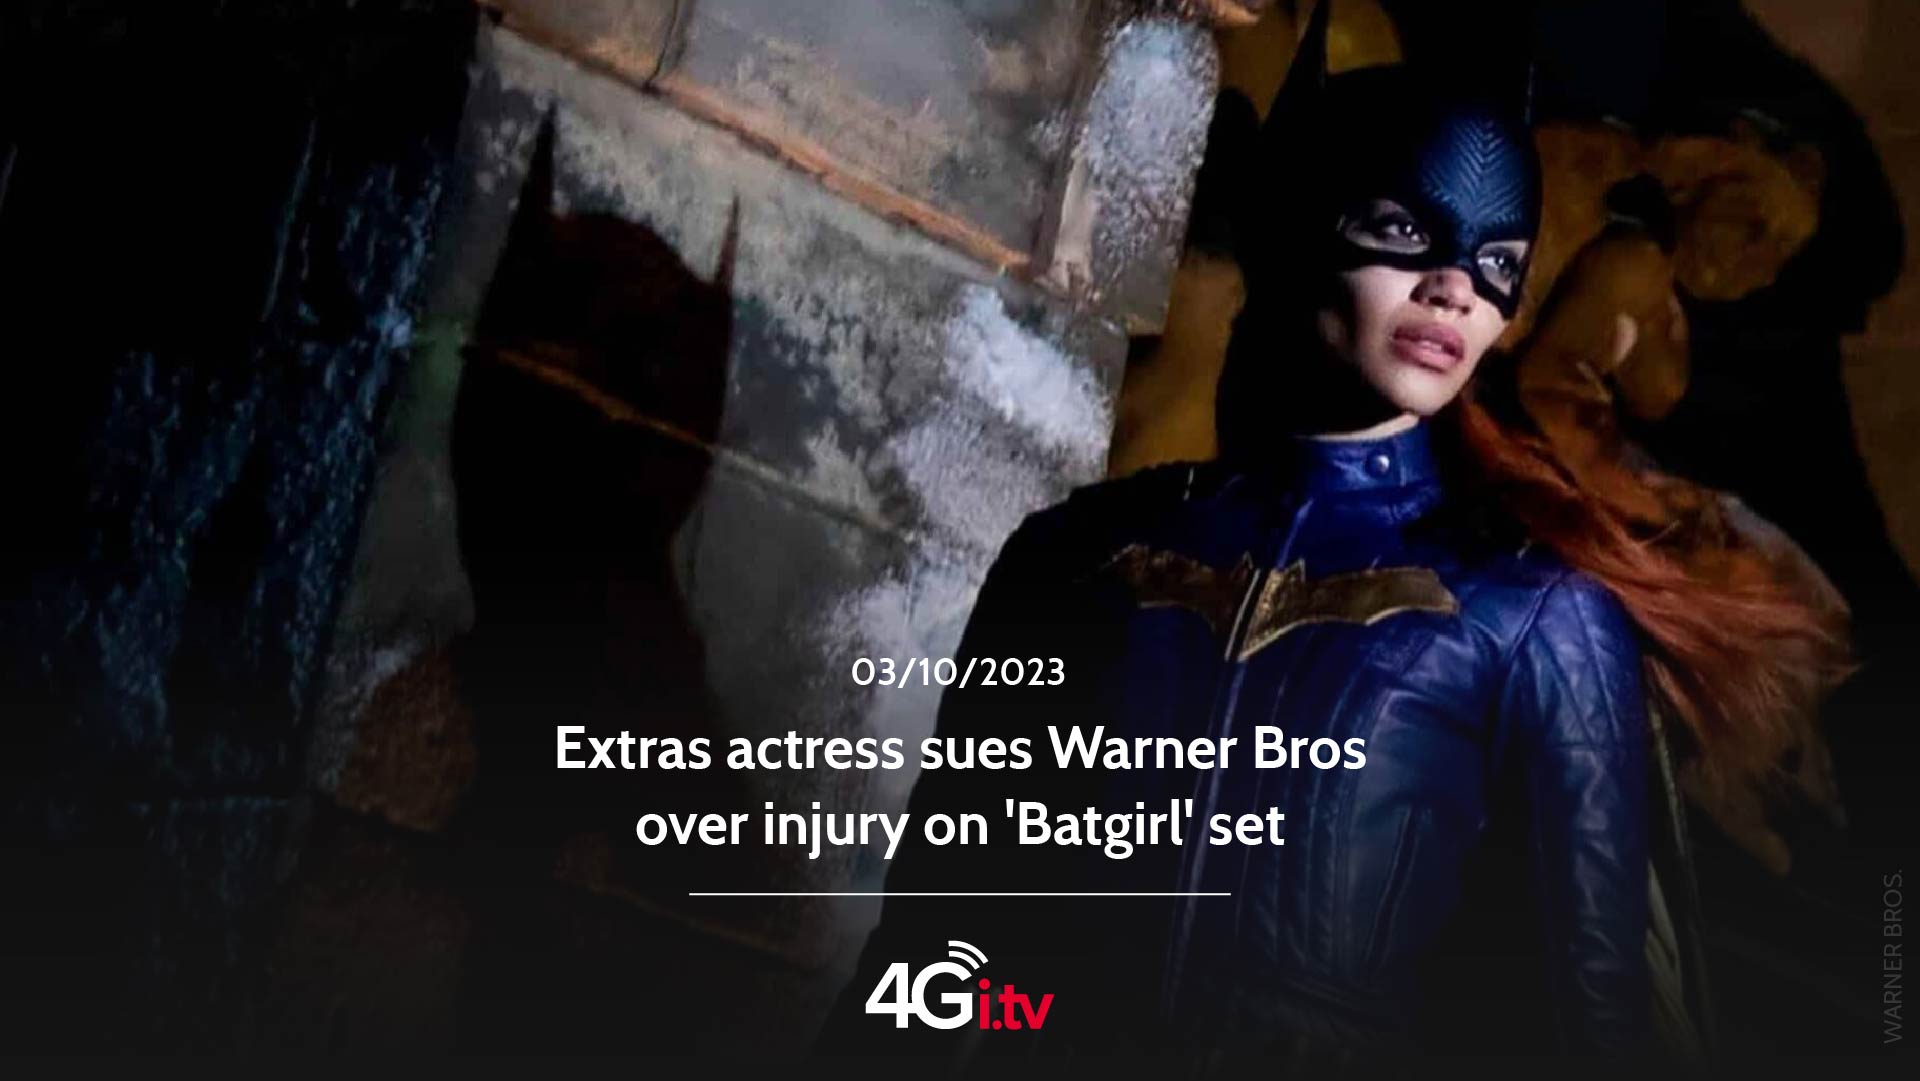 Подробнее о статье Extras actress sues Warner Bros over injury on ‘Batgirl’ set